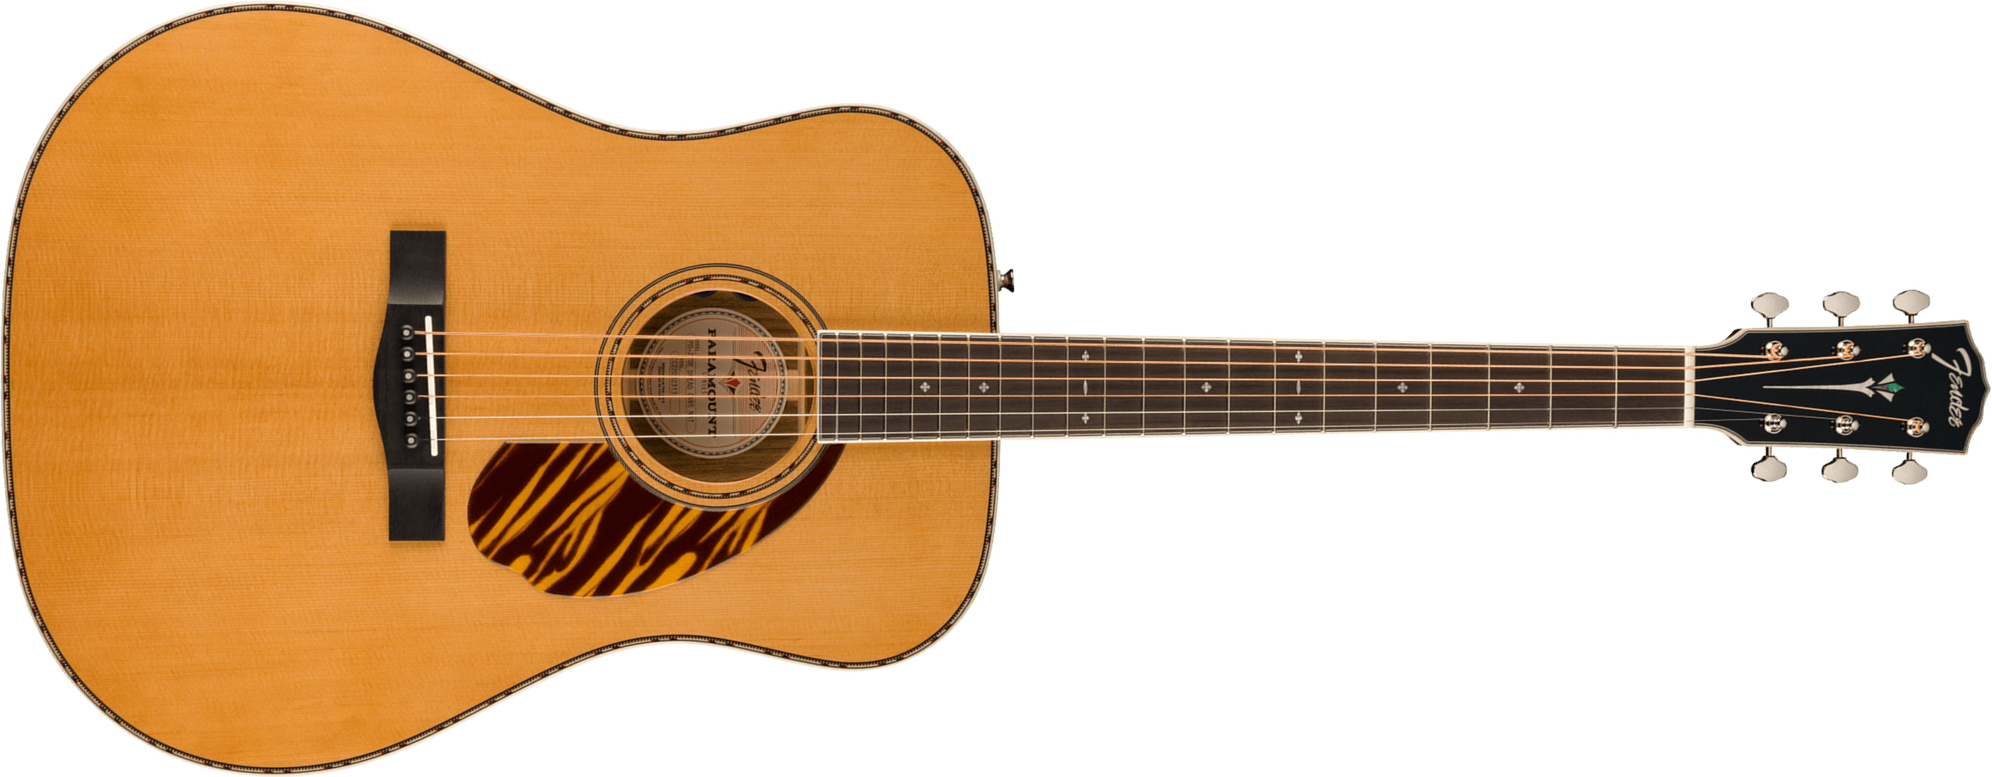 Fender Pd-220e Paramount Fsr Ltd Dreadnought Epicea Ovangkol Ova - Aged Natural - Elektro-akoestische gitaar - Main picture